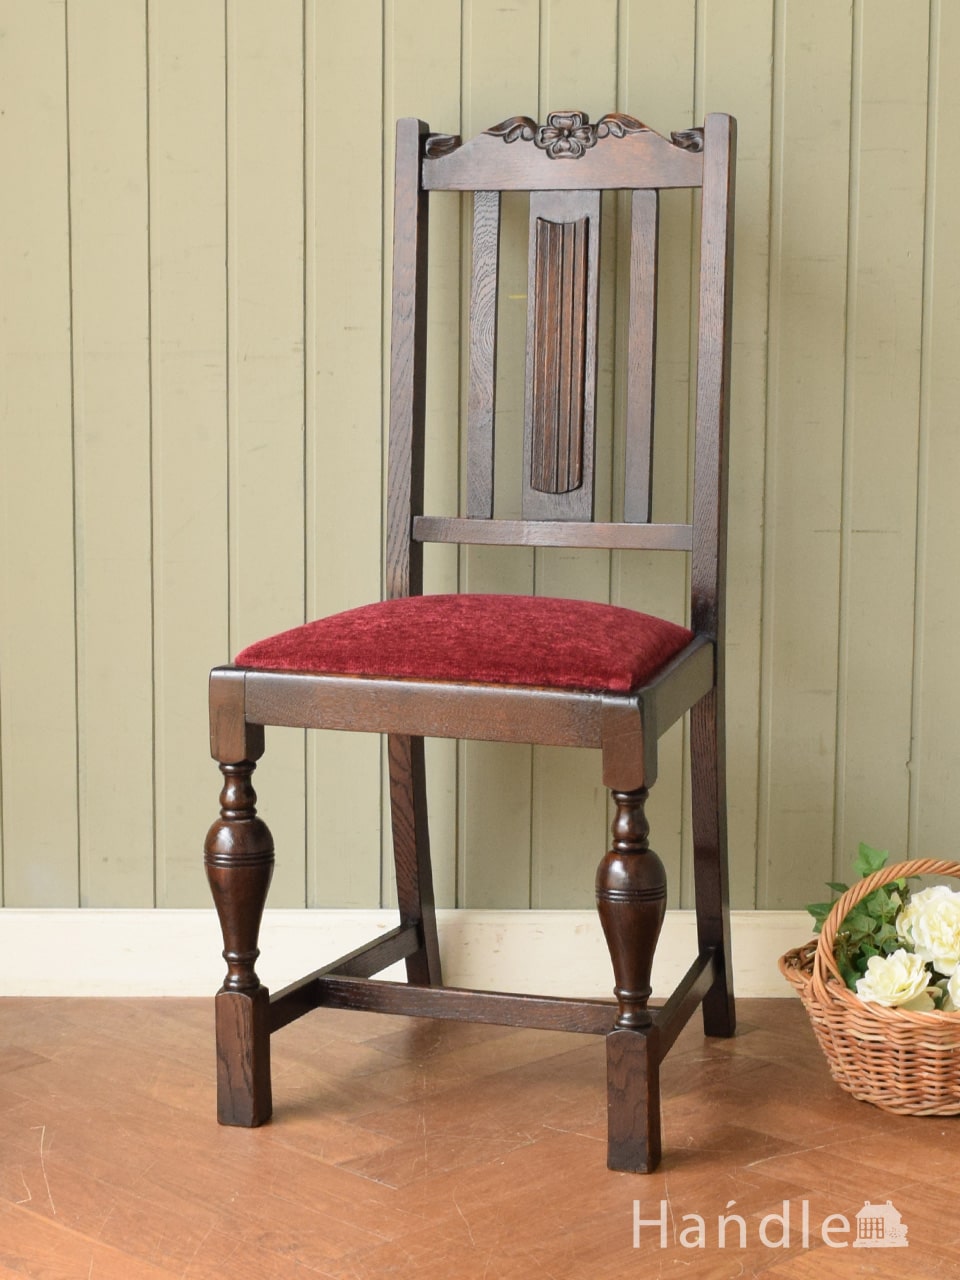 英国で見つけたアンティークの椅子、お花の彫刻がキレイなバルボスレッグのダイニングチェア (q-462-c)